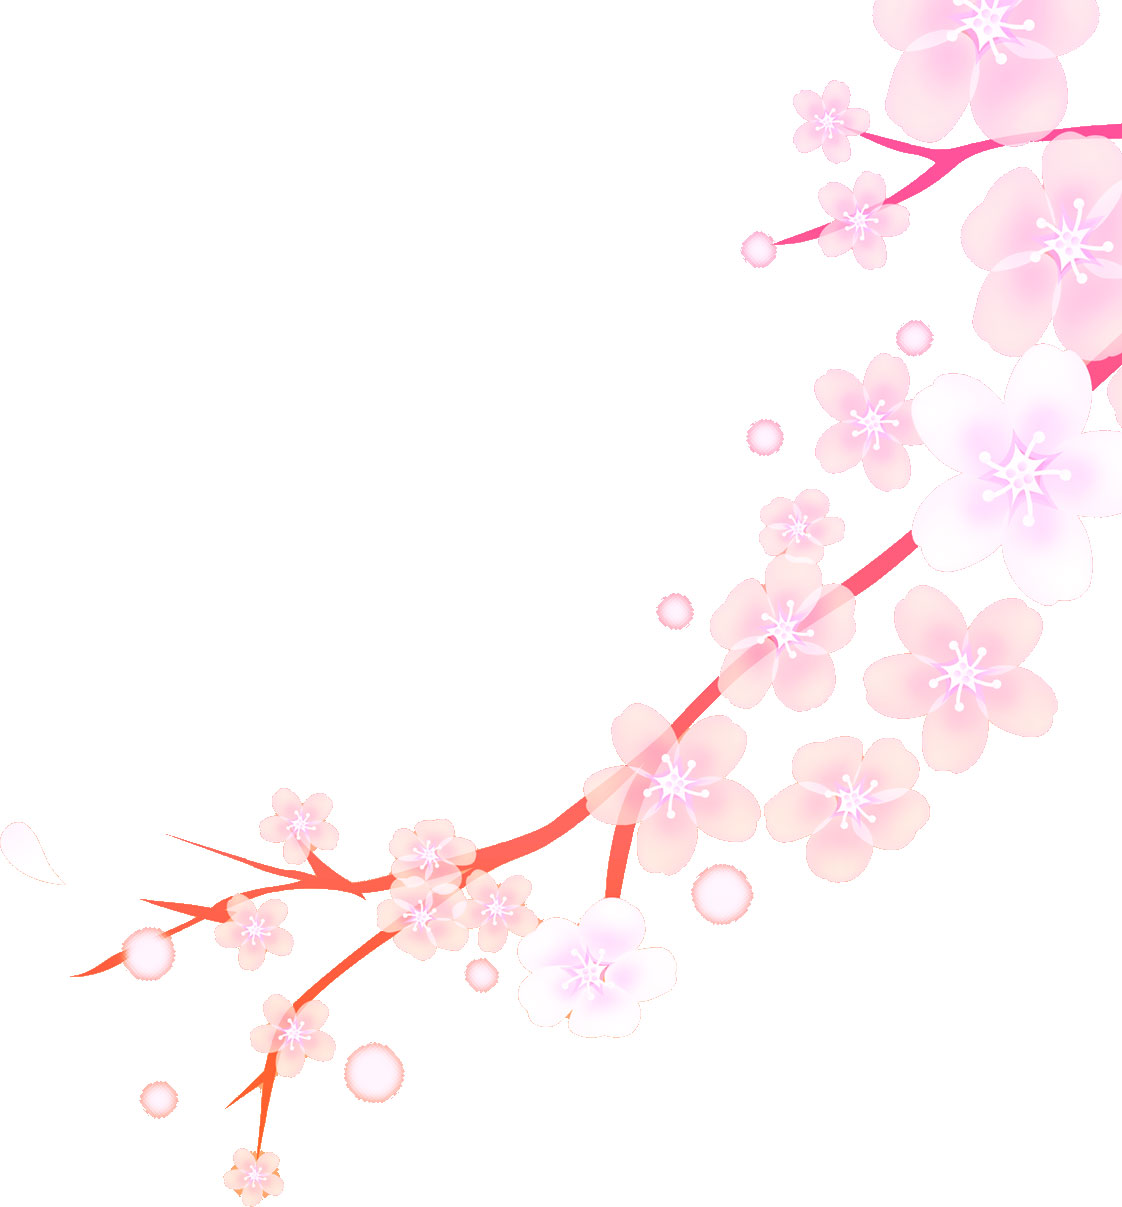 桜 さくら の画像 イラスト フリー素材 No 022 桜 枝 淡い 随時更新 和風な桜のイラスト Naver まとめ